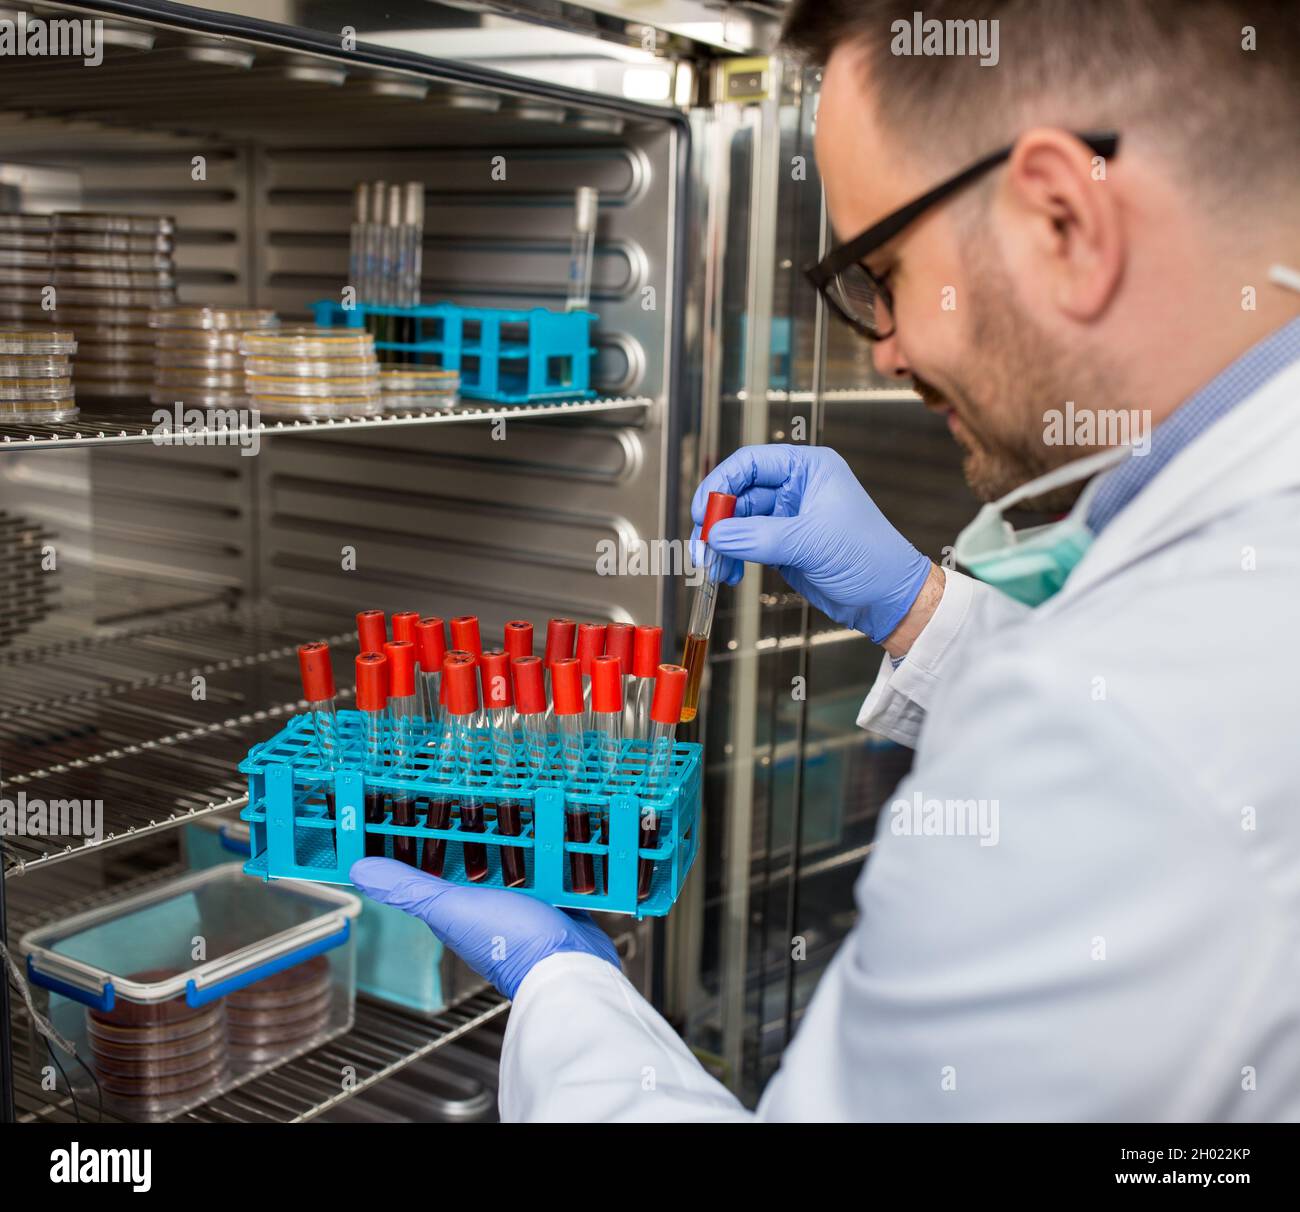 Biologo in camice bianco e con guanti protettivi per prelevare campioni da un moderno incubatore Foto Stock